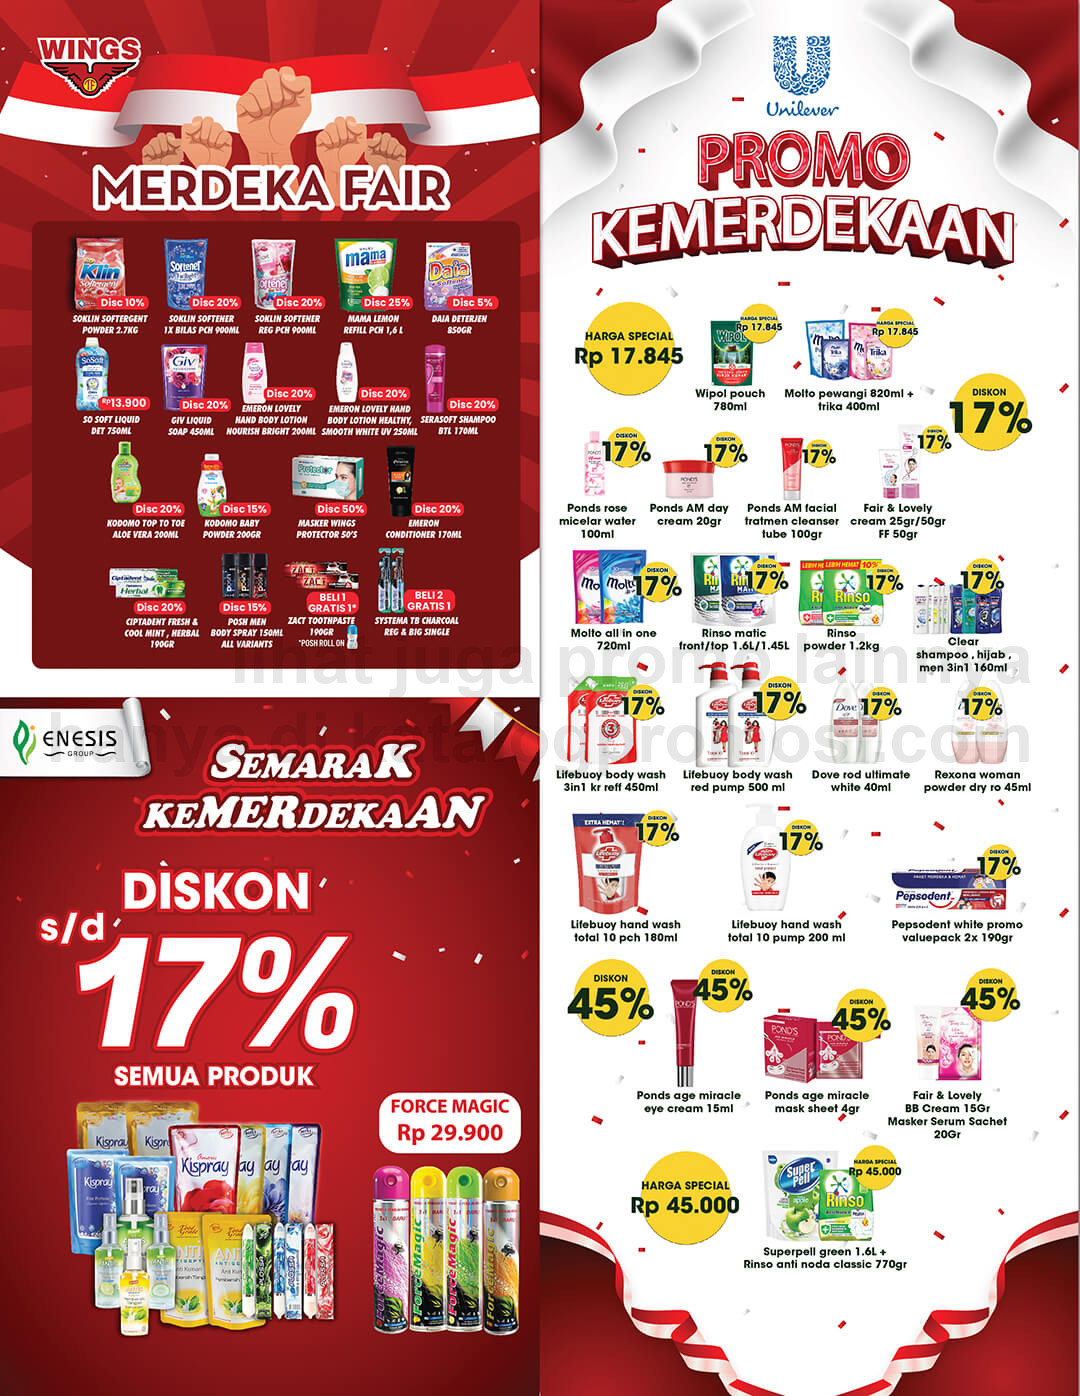 Promo Hypermart Katalog Belanja Mingguan periode 04-17 Agustus 2022